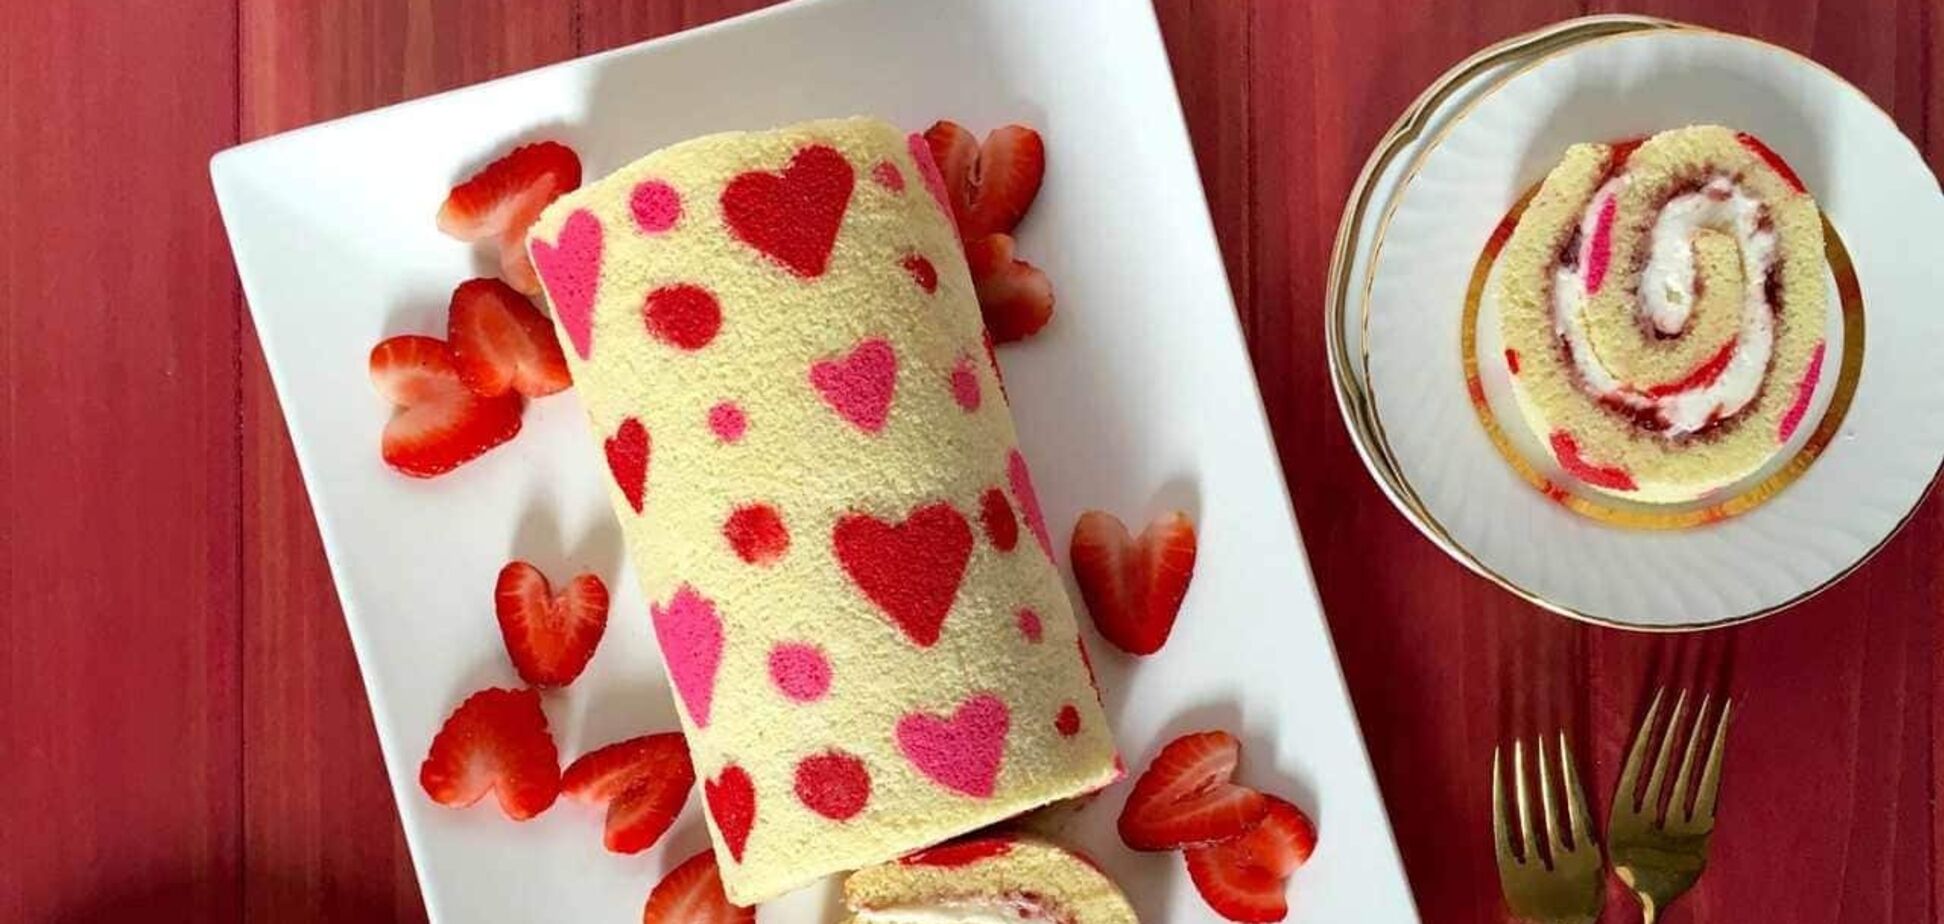 Праздничный рулет 'Валентинка': эффектный десерт в День влюбленных